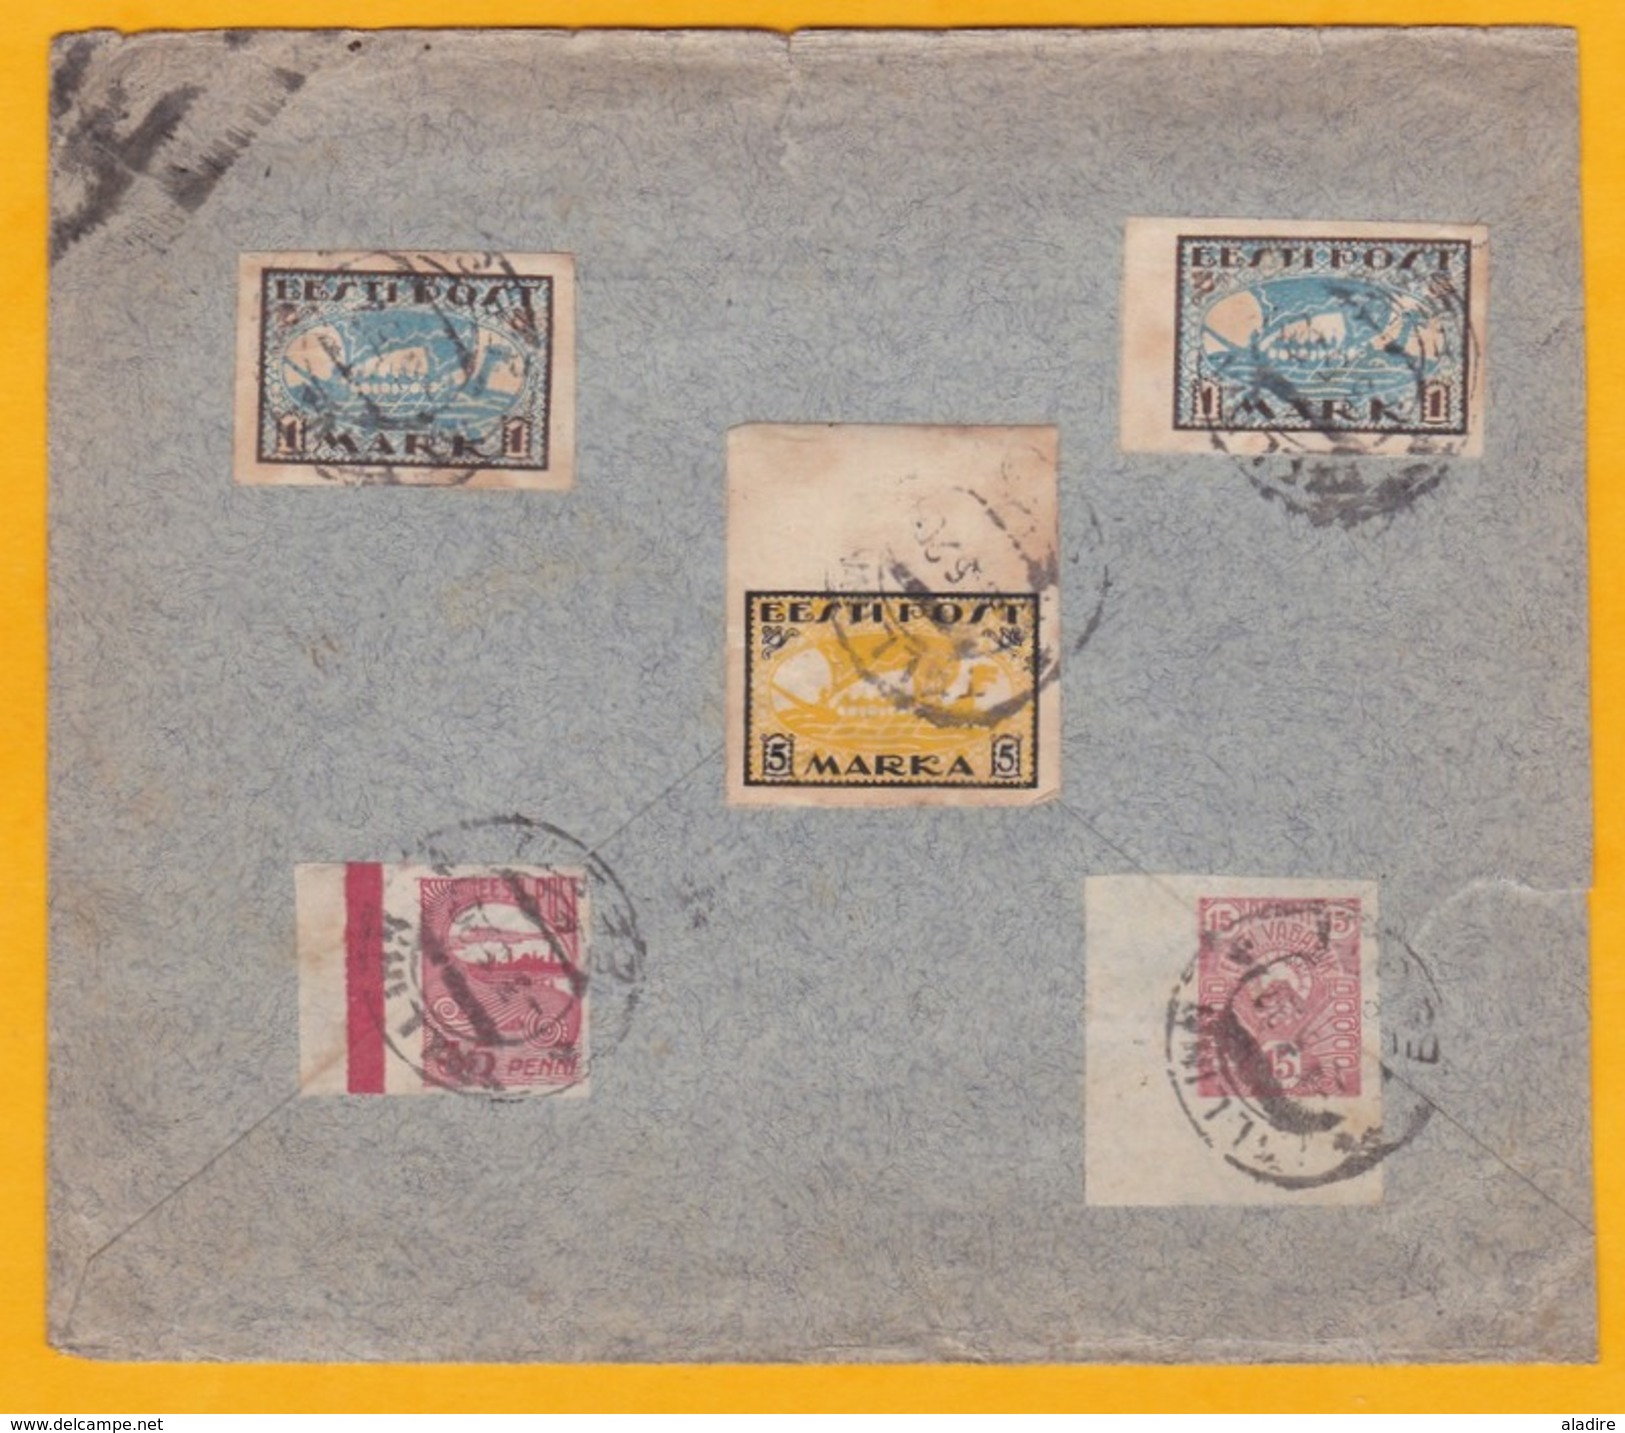 1920 - Enveloppe De Reval, Tallin, Estonie Vers Vienne, Autriche - Affrt Multicolore Timbres Non Dentelés - Estonie